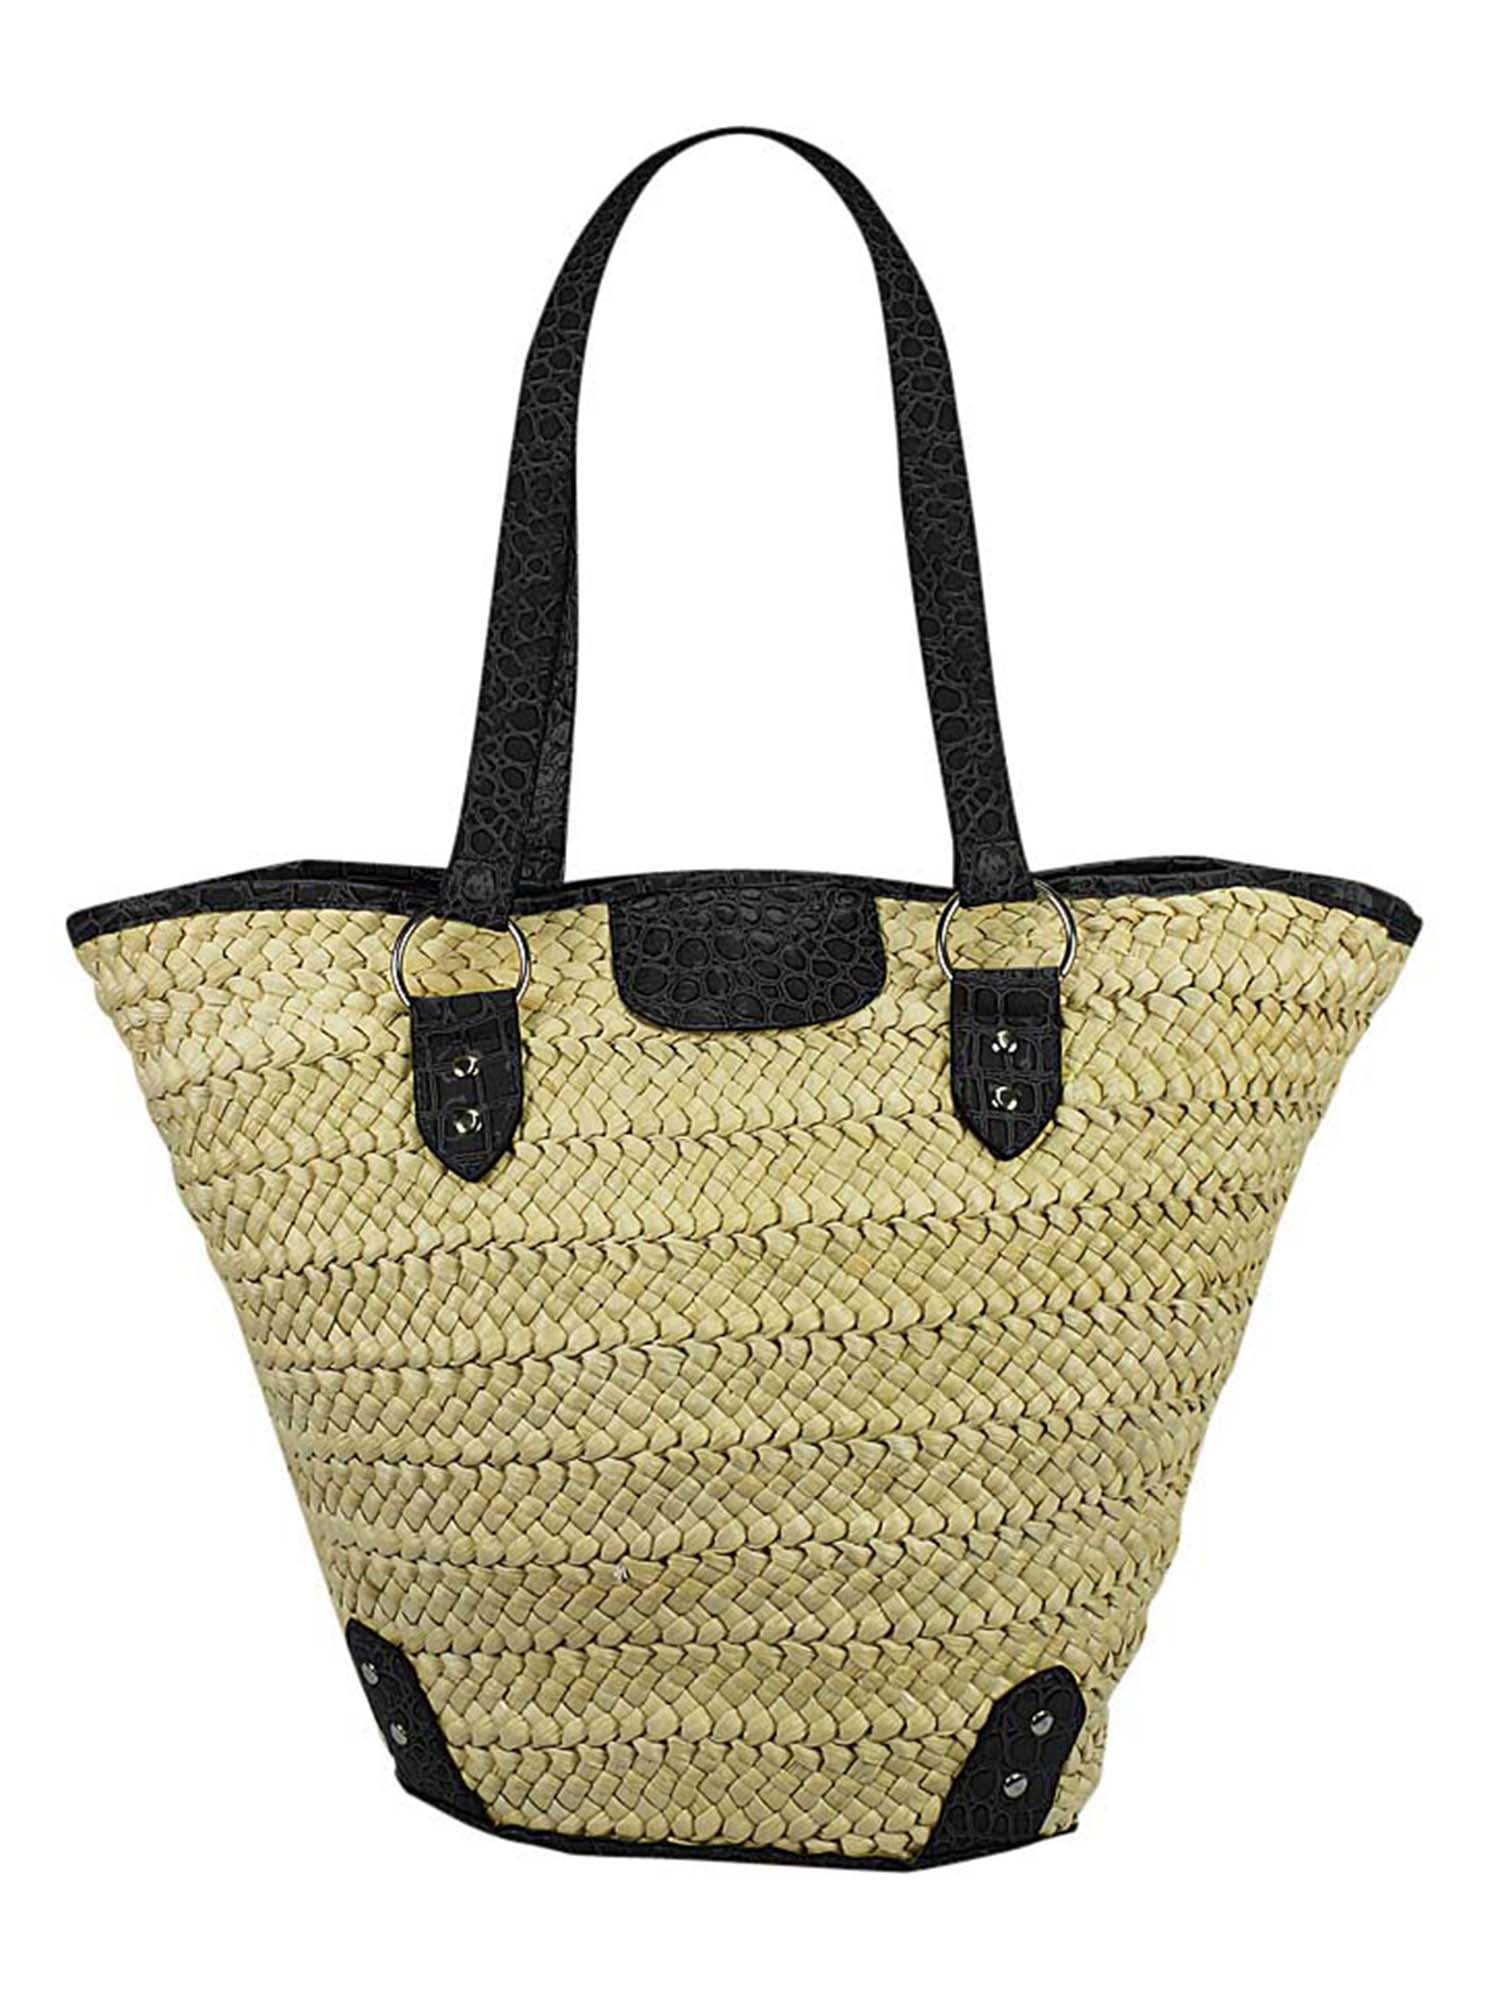 braided beach bag